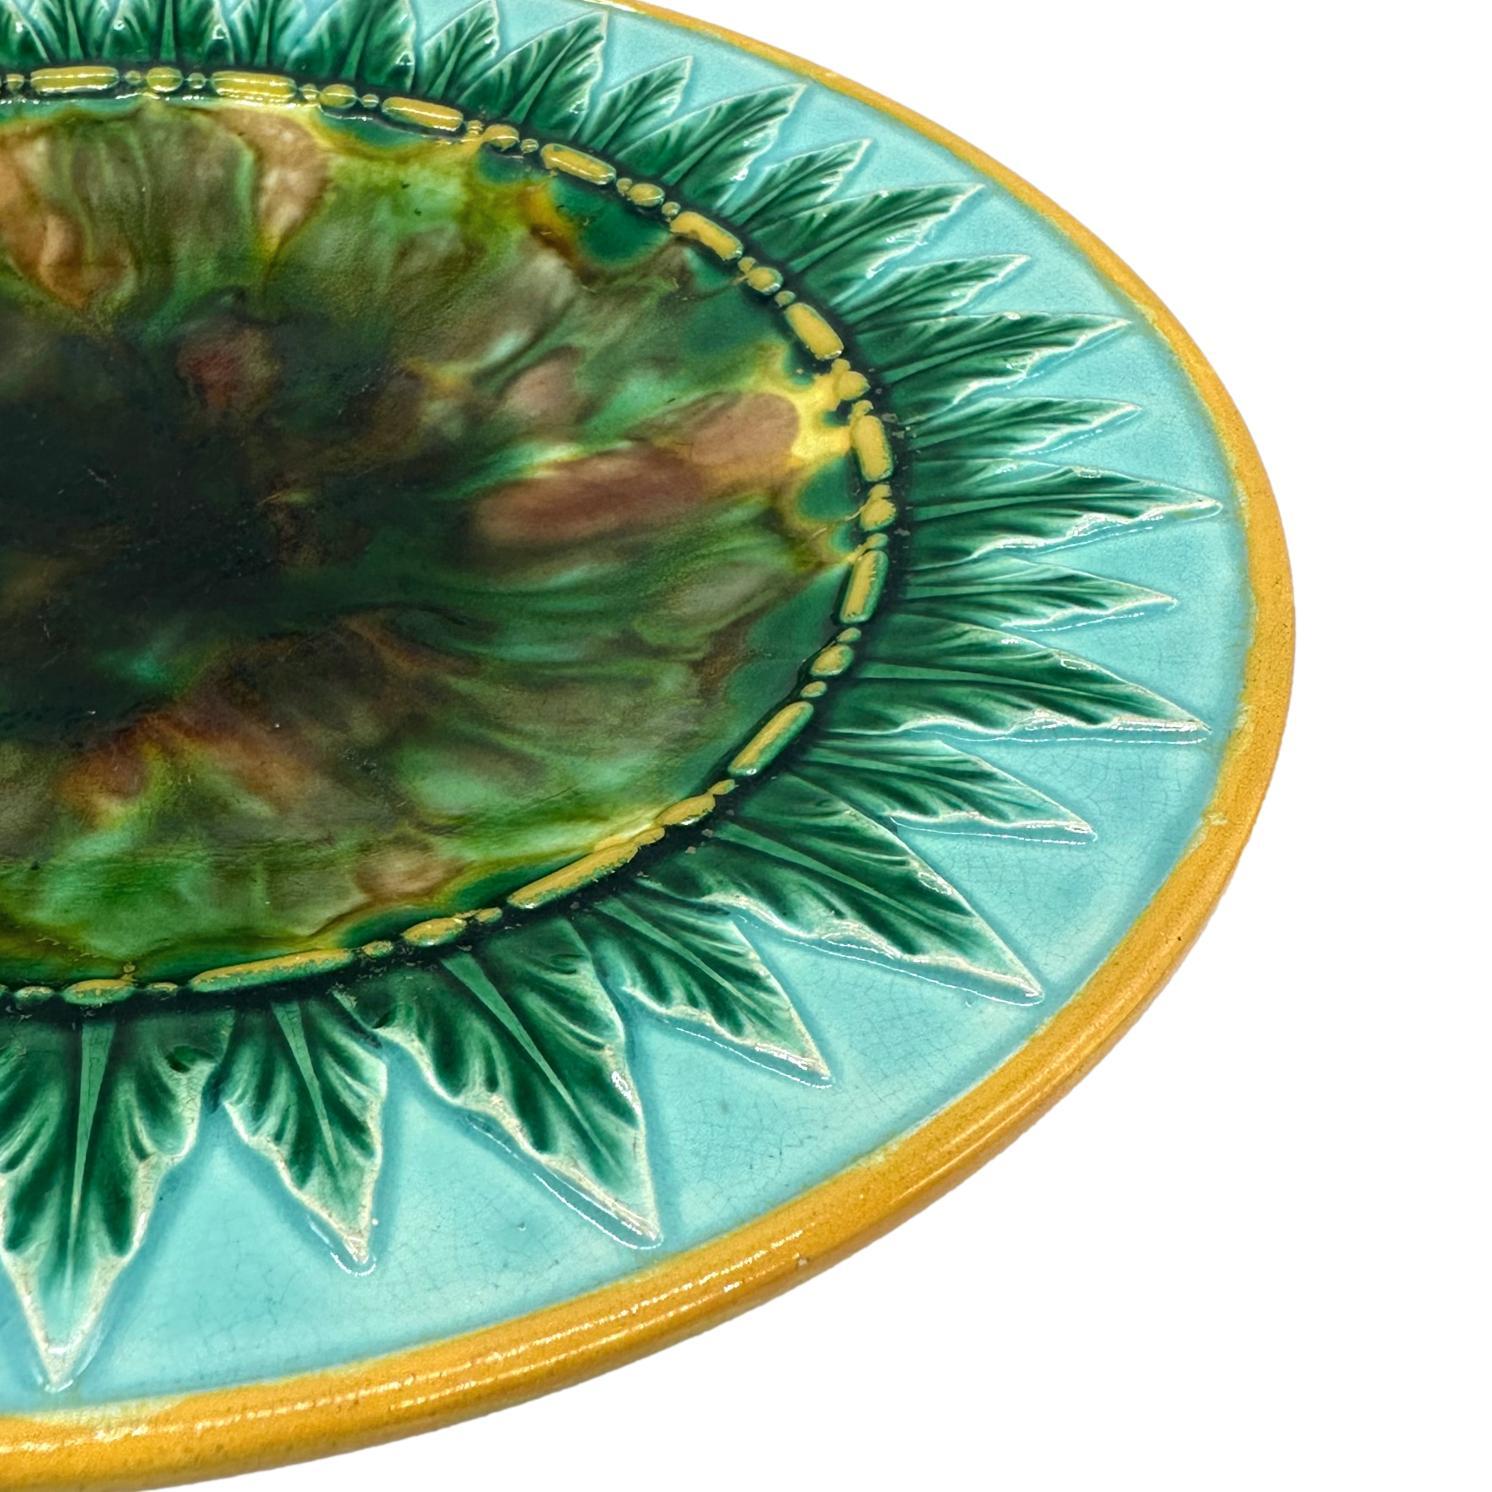 Victorian George Jones Majolica Dish, Tortoiseshell Mottling, Green Leaves on Turquoise For Sale